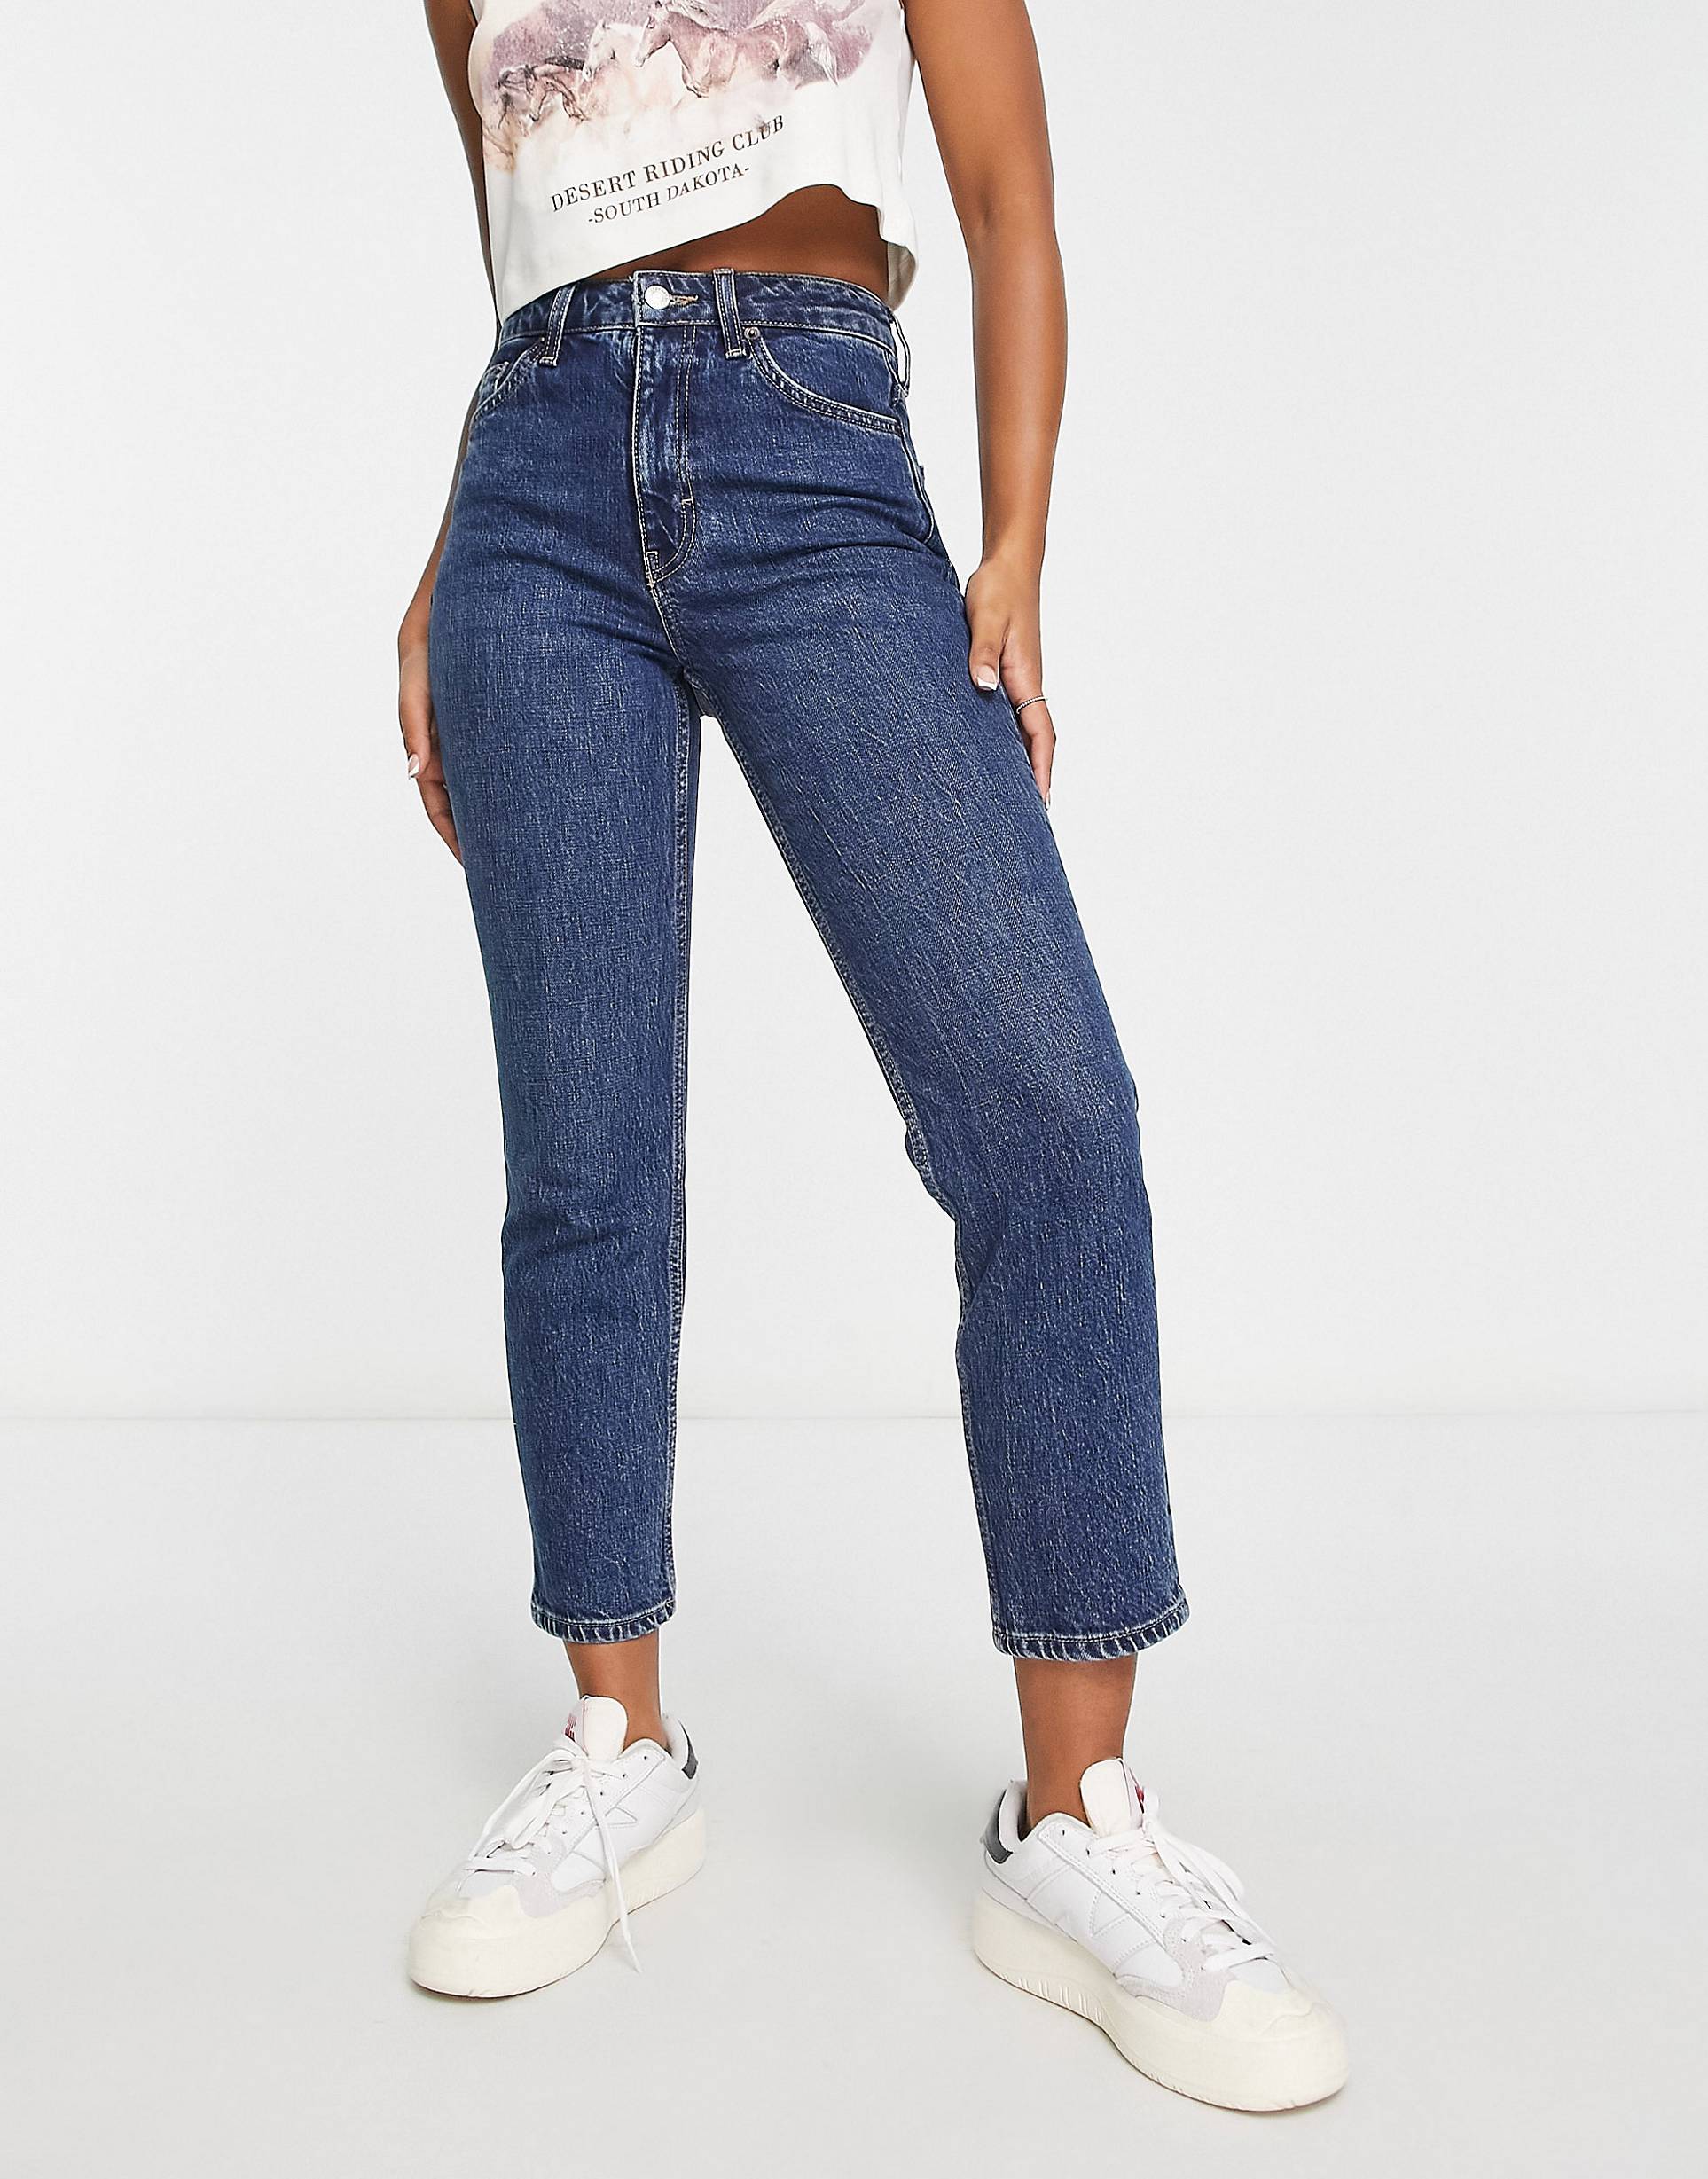 Прямые джинсы Topshop с чистым подолом цвета индиго